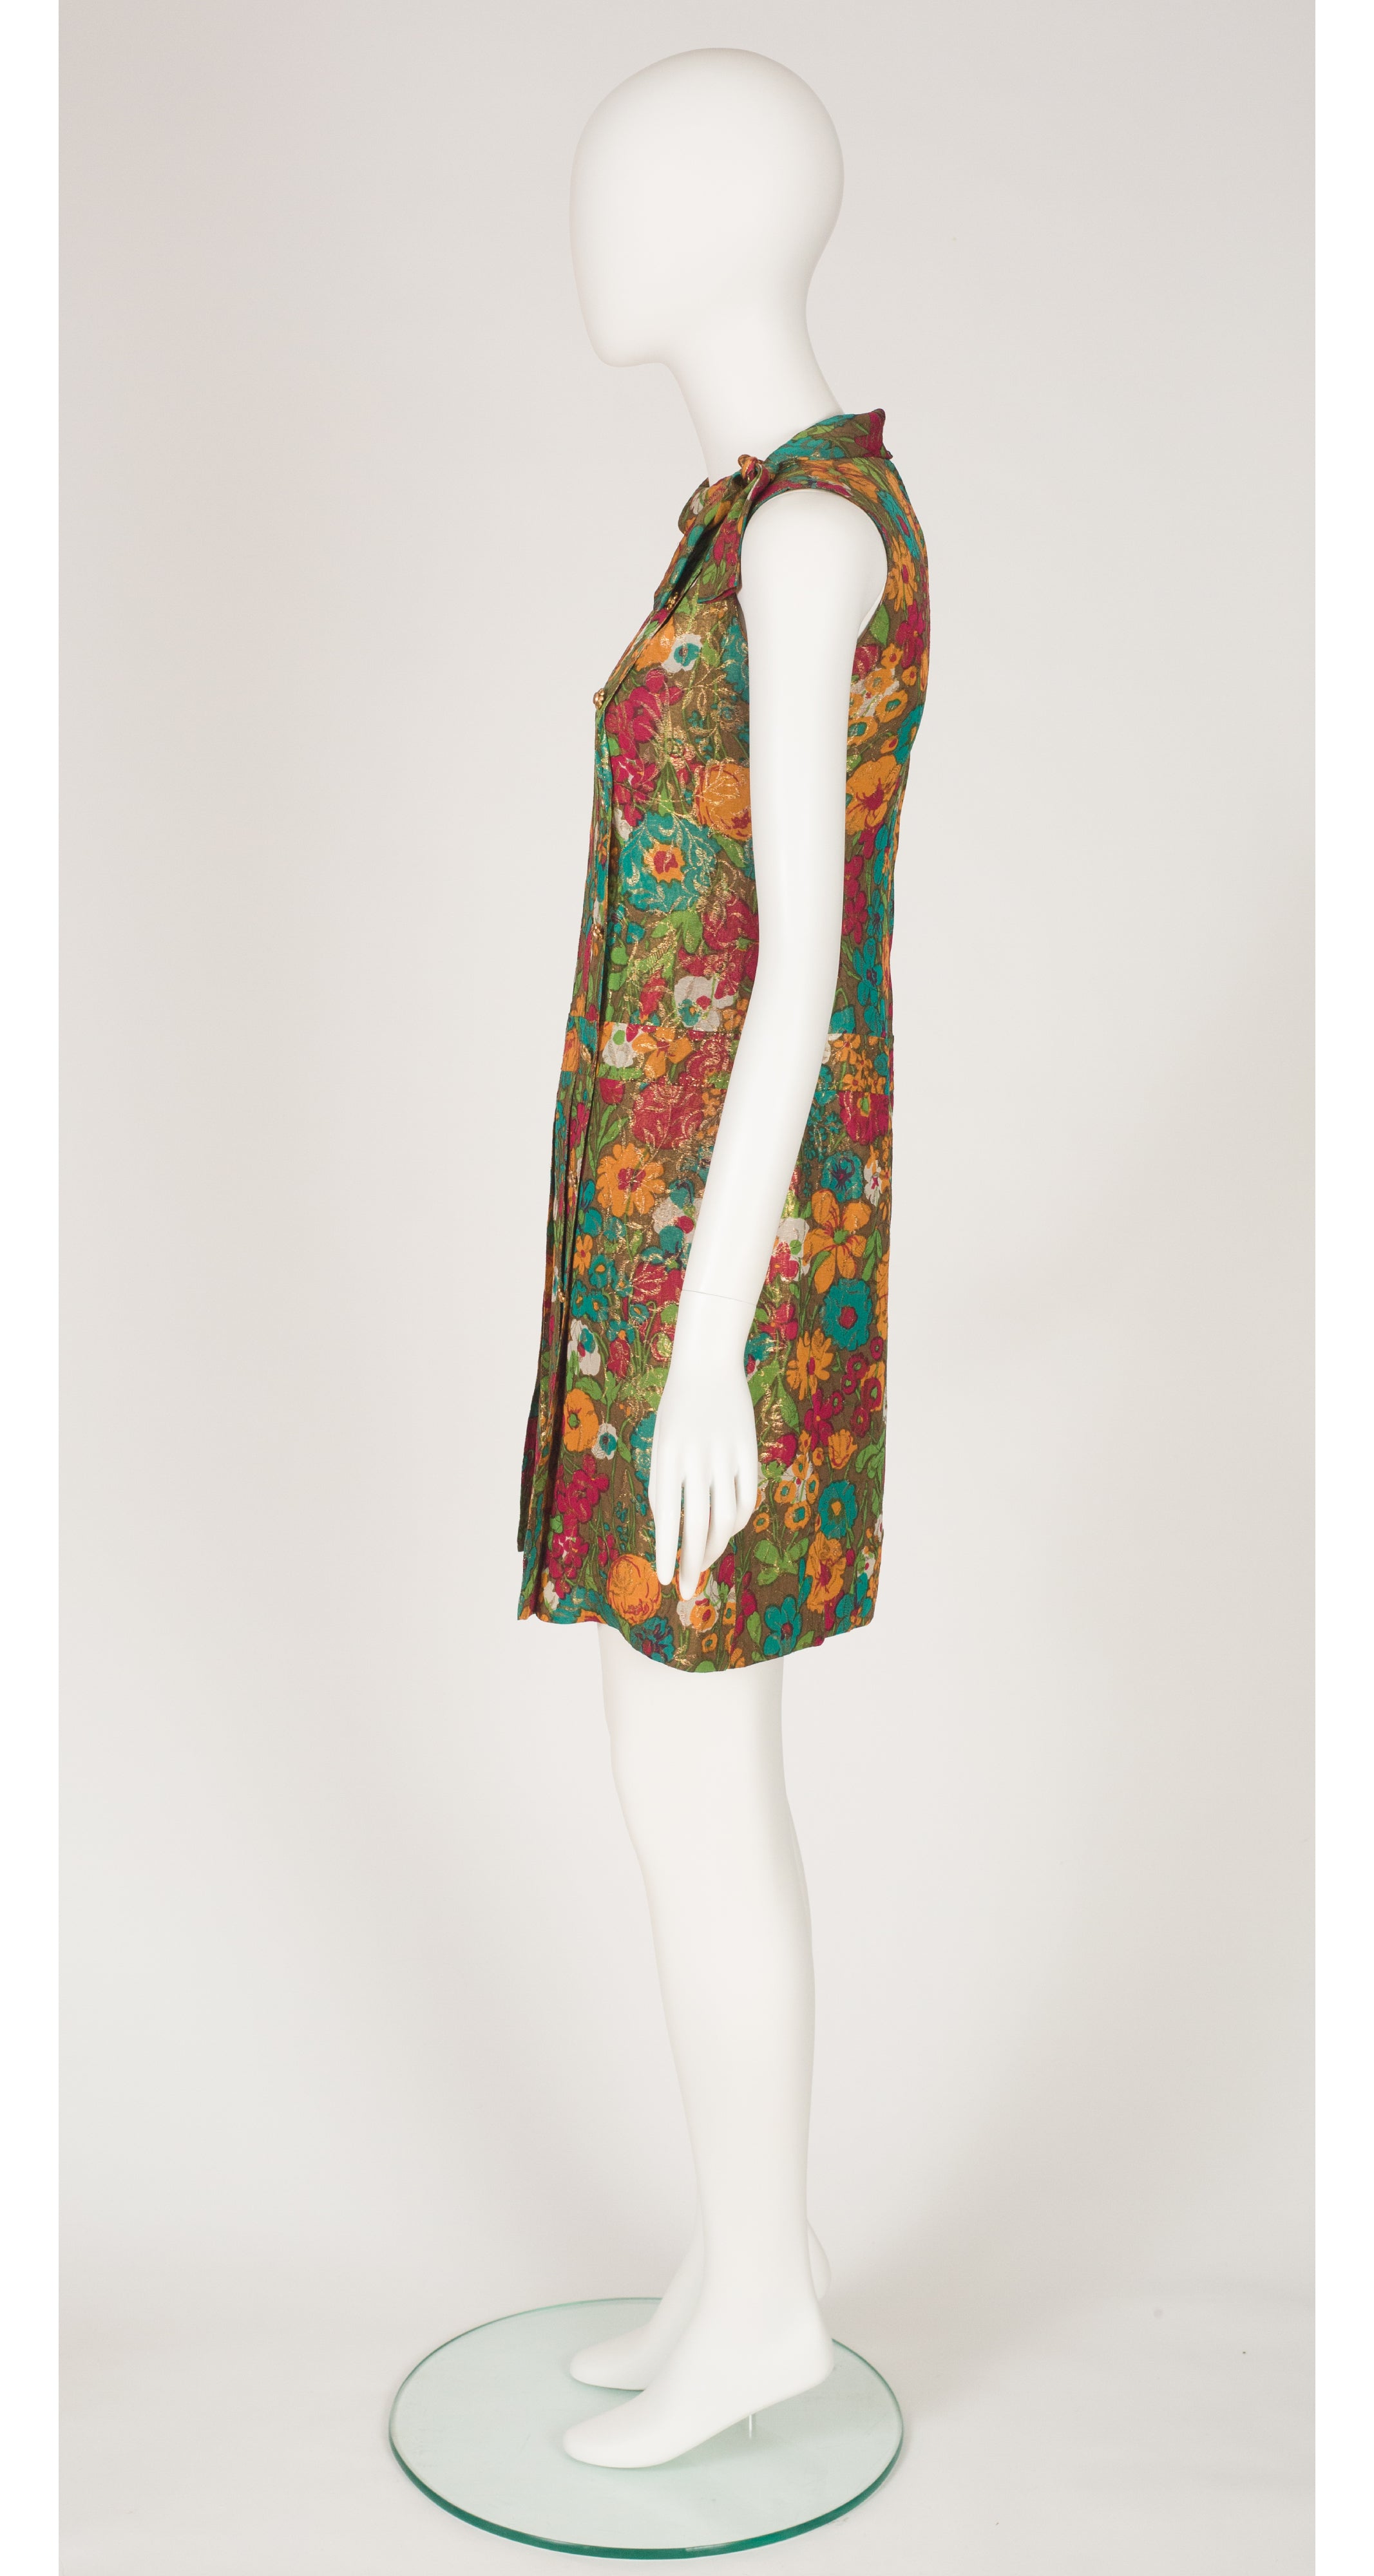 1960s Mod Floral Lamé Scooter Dress